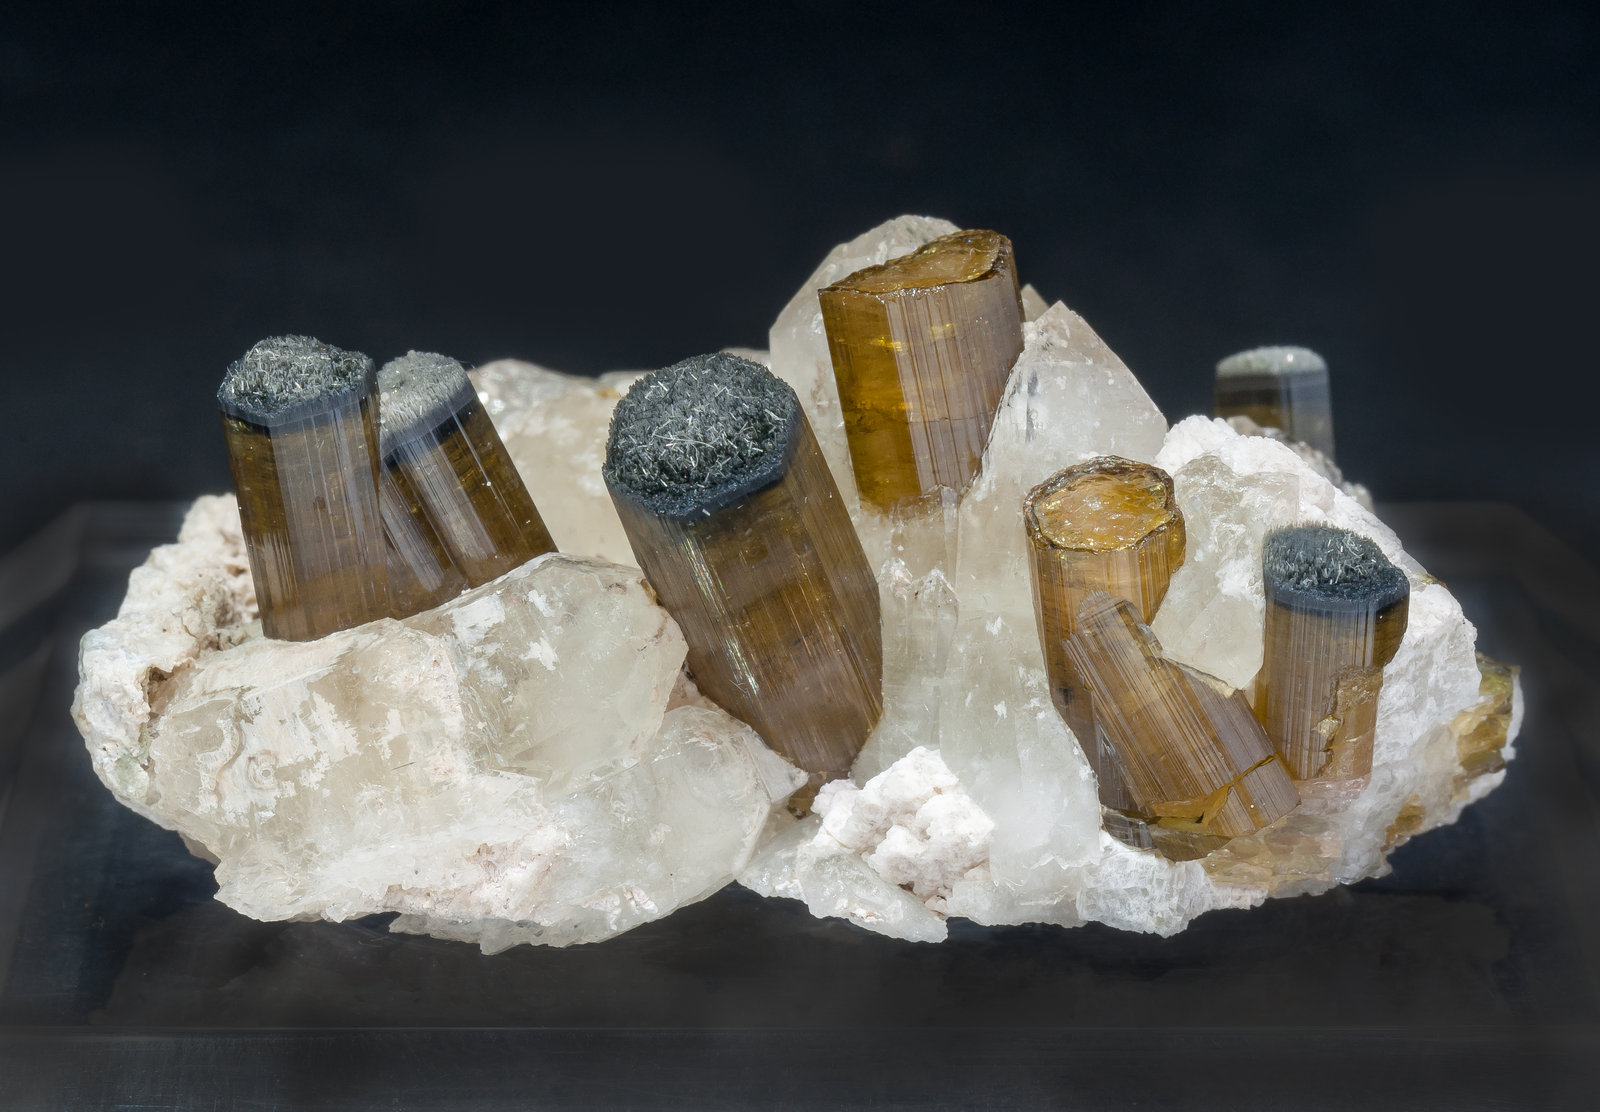 specimens/s_imagesAM1/Elbaite-EB97AM1f.jpg